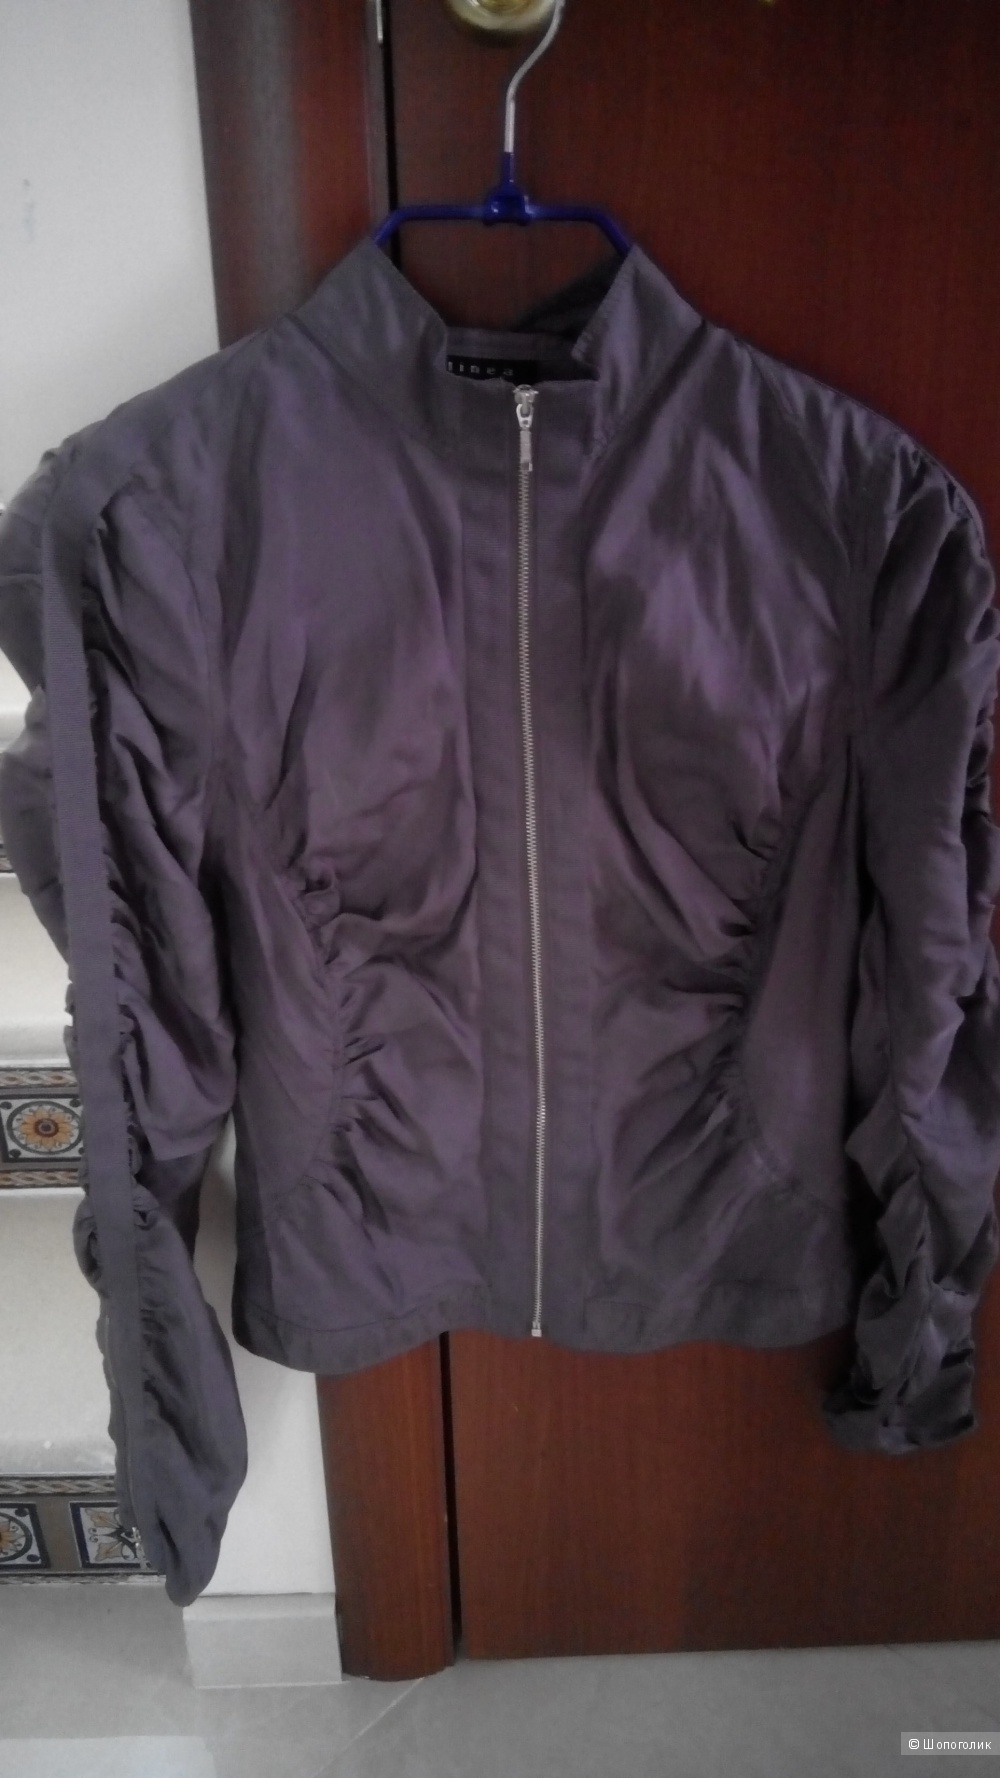 Красивая легкая куртка-жакет, натуральный шелк Linea,  uk 10, цвет пыльной розы